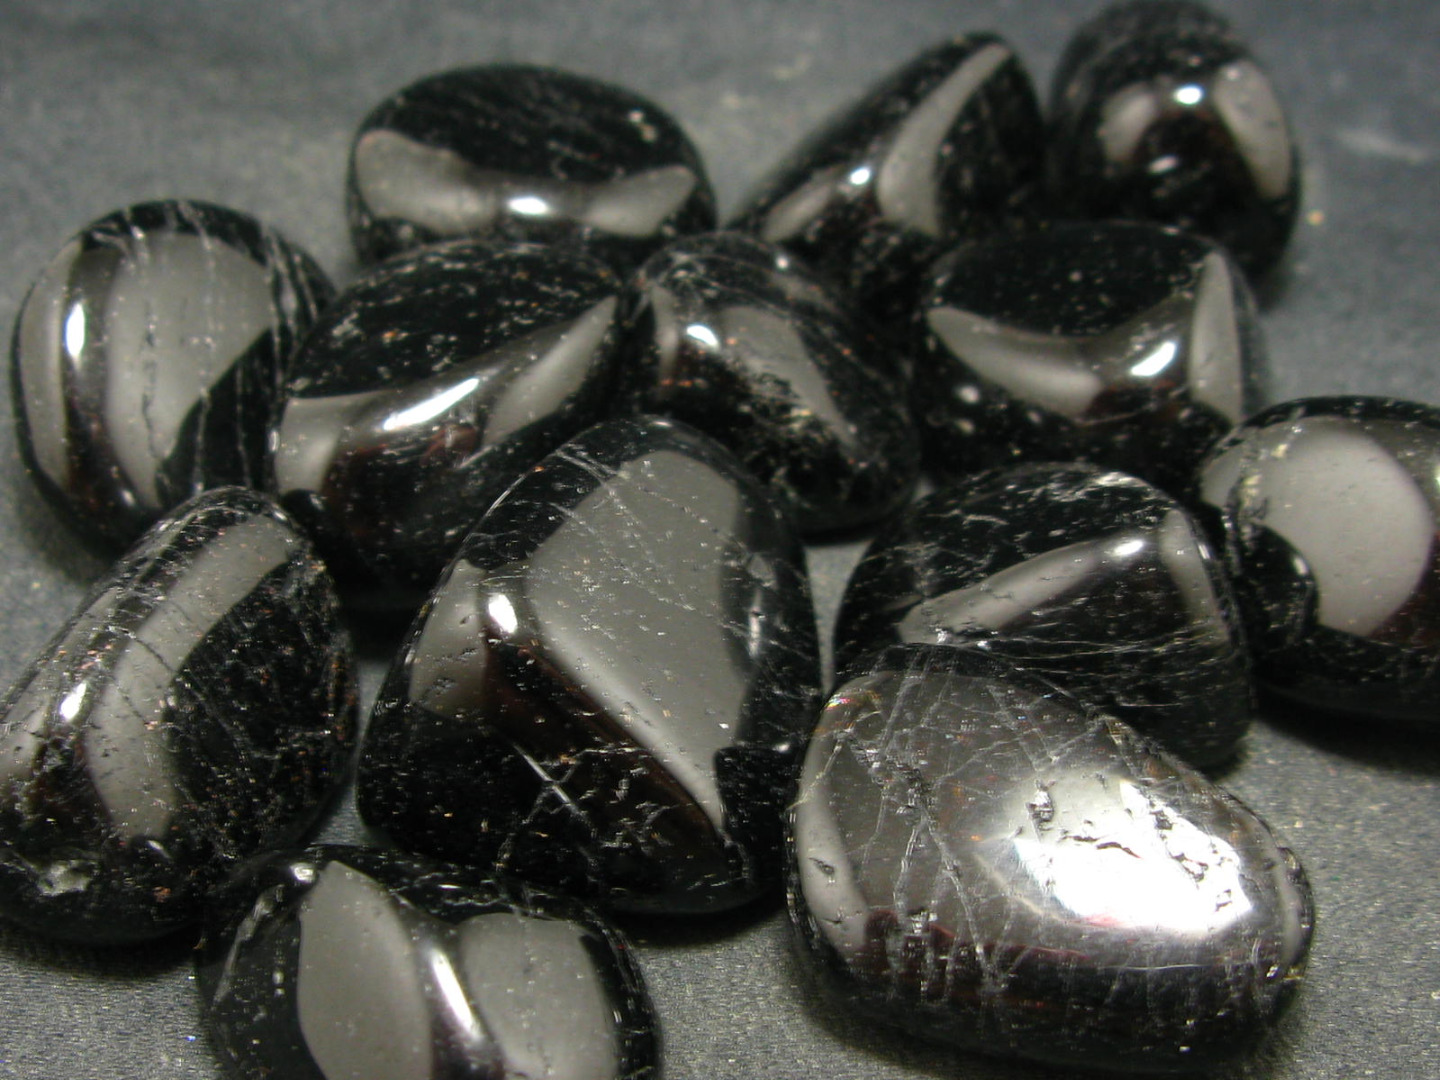 đá sapphire đen cho người sinh năm 2010